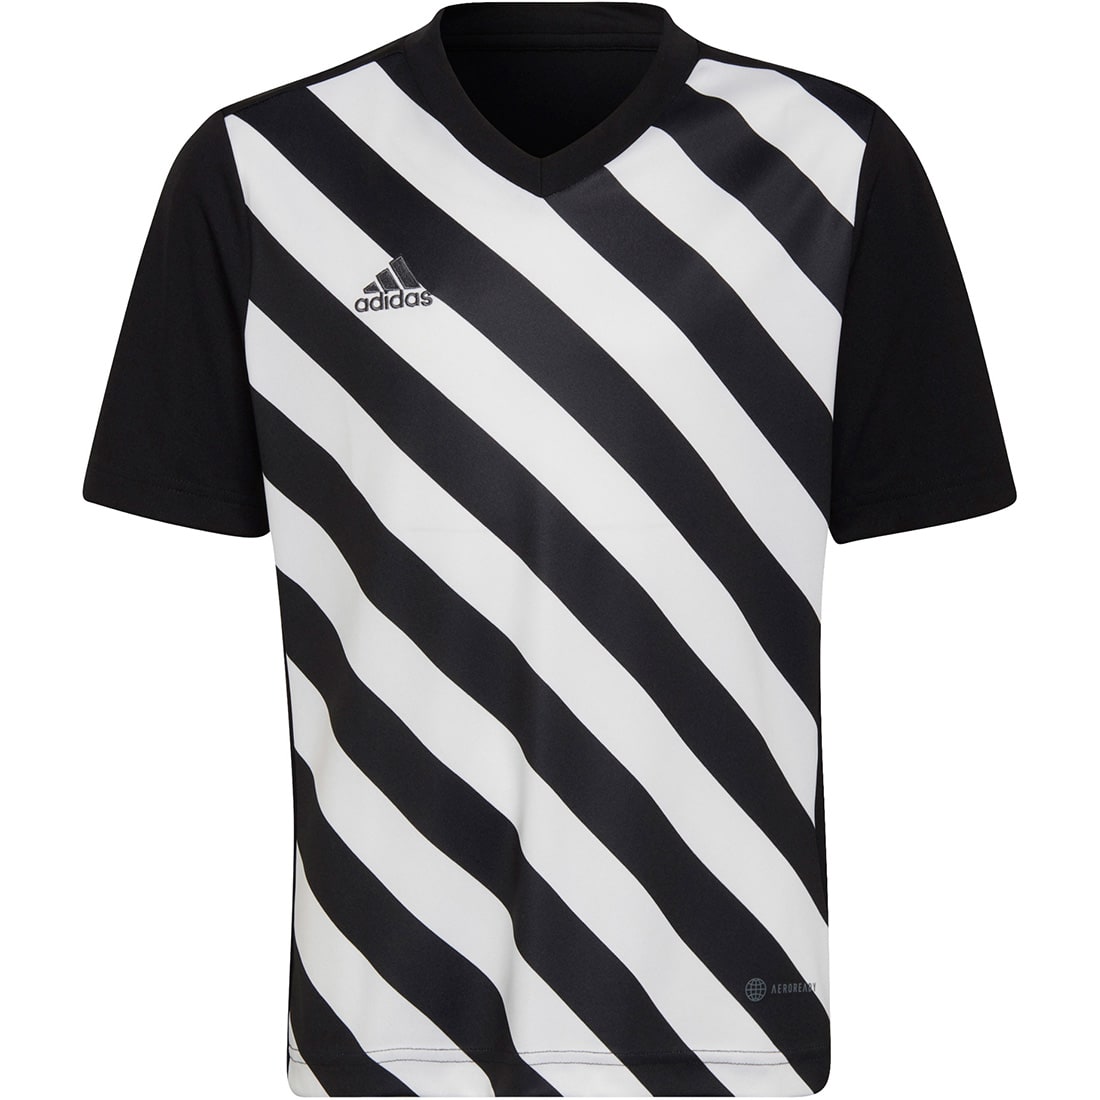 Adidas Kinder GFX Trikot kaufen online Entrada schwarz-weiß 22